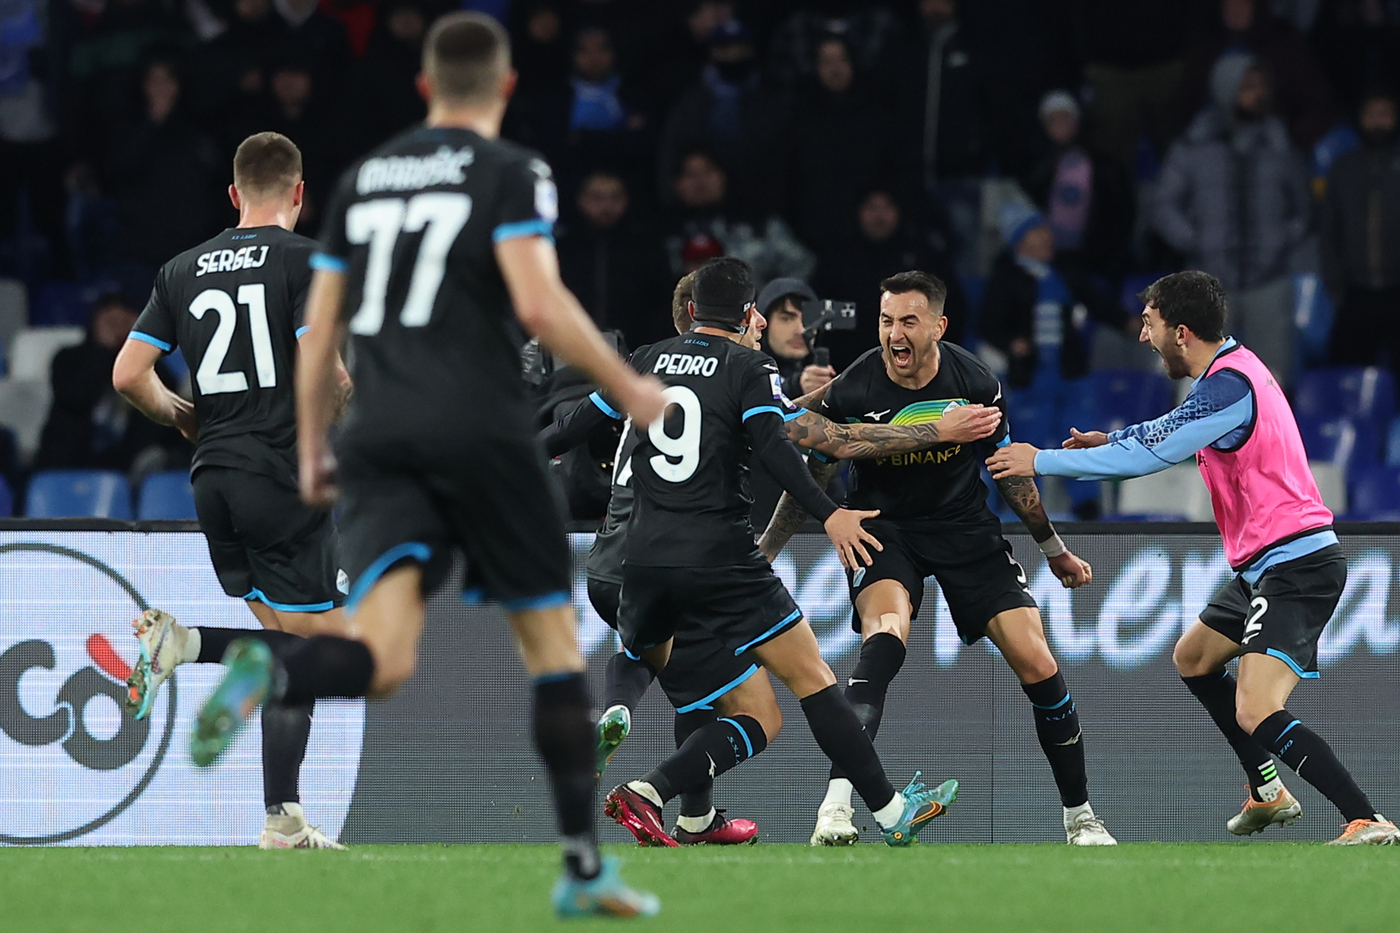 La Lazio festeggia dopo il gol di Vecino contro il Napoli.